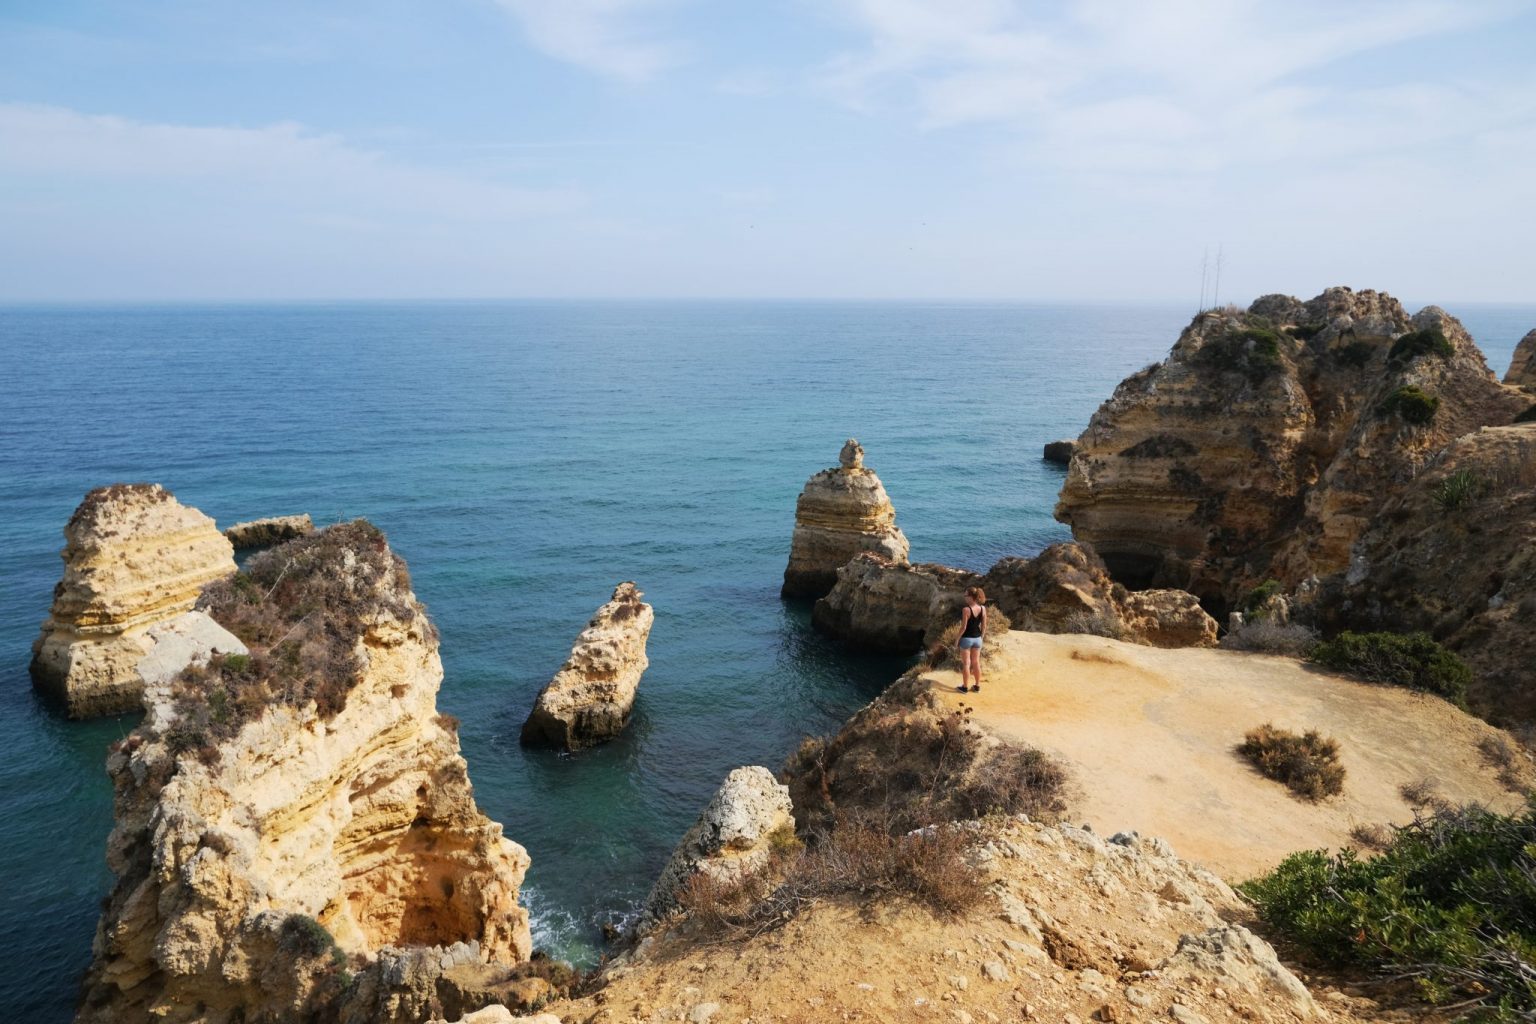 Mini itinerario di 5 giorni in Algarve